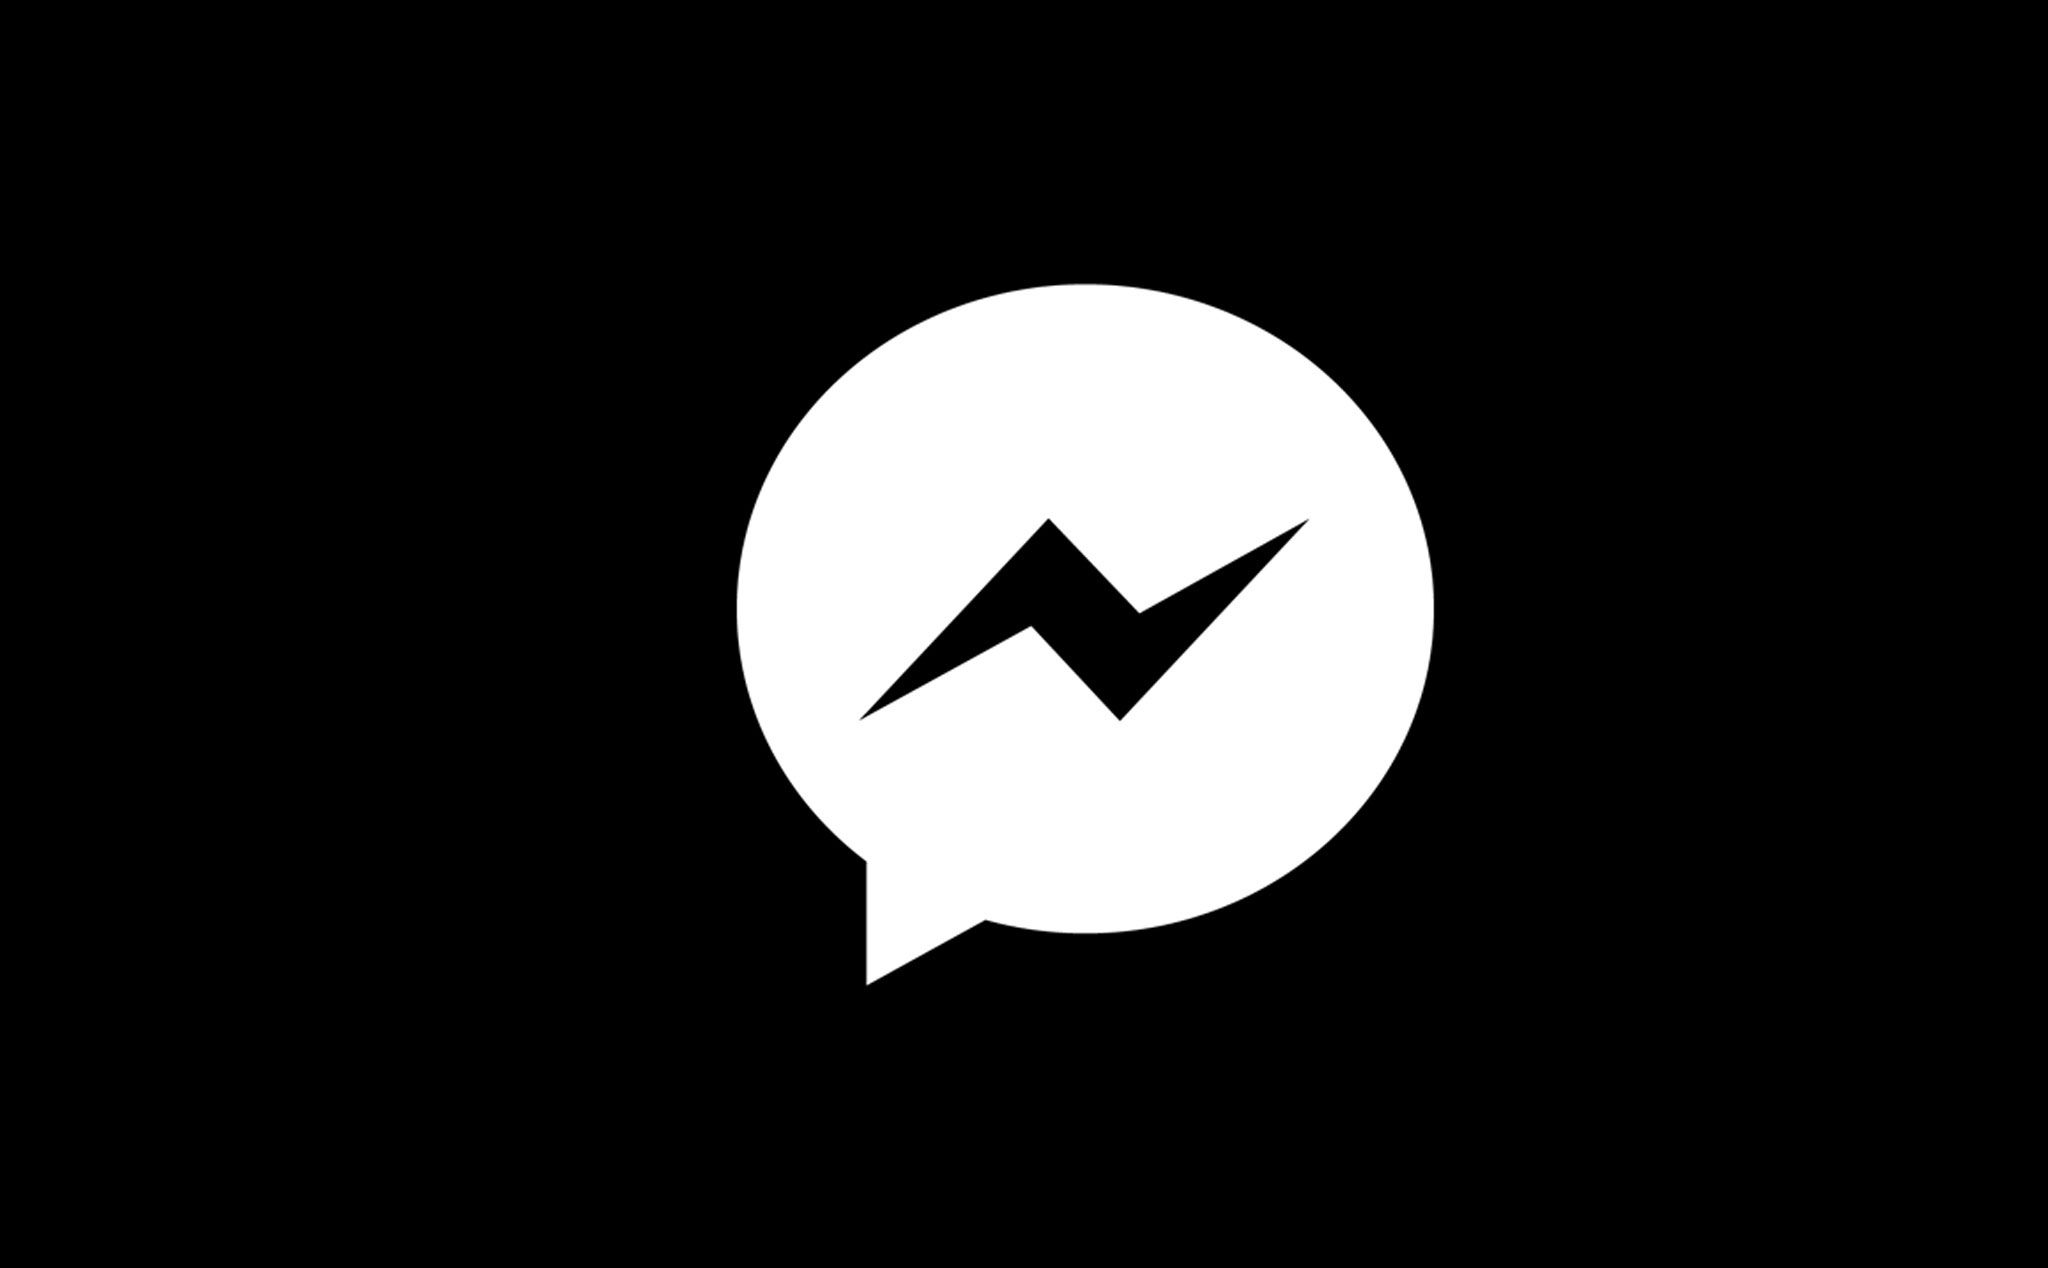 Chat trắng đen trên Messenger có thể mang lại cho bạn cảm giác trầm lắng và đậm chất nghệ thuật. Tốc độ tương tác nhanh chóng trên Messenger sẽ giúp bạn truyền tải cảm xúc và suy nghĩ của mình một cách rõ ràng và sắc nét hơn. Hãy thưởng thức những cuộc trò chuyện trắng đen trên Messenger ngay trên chiếc điện thoại yêu thích của bạn.